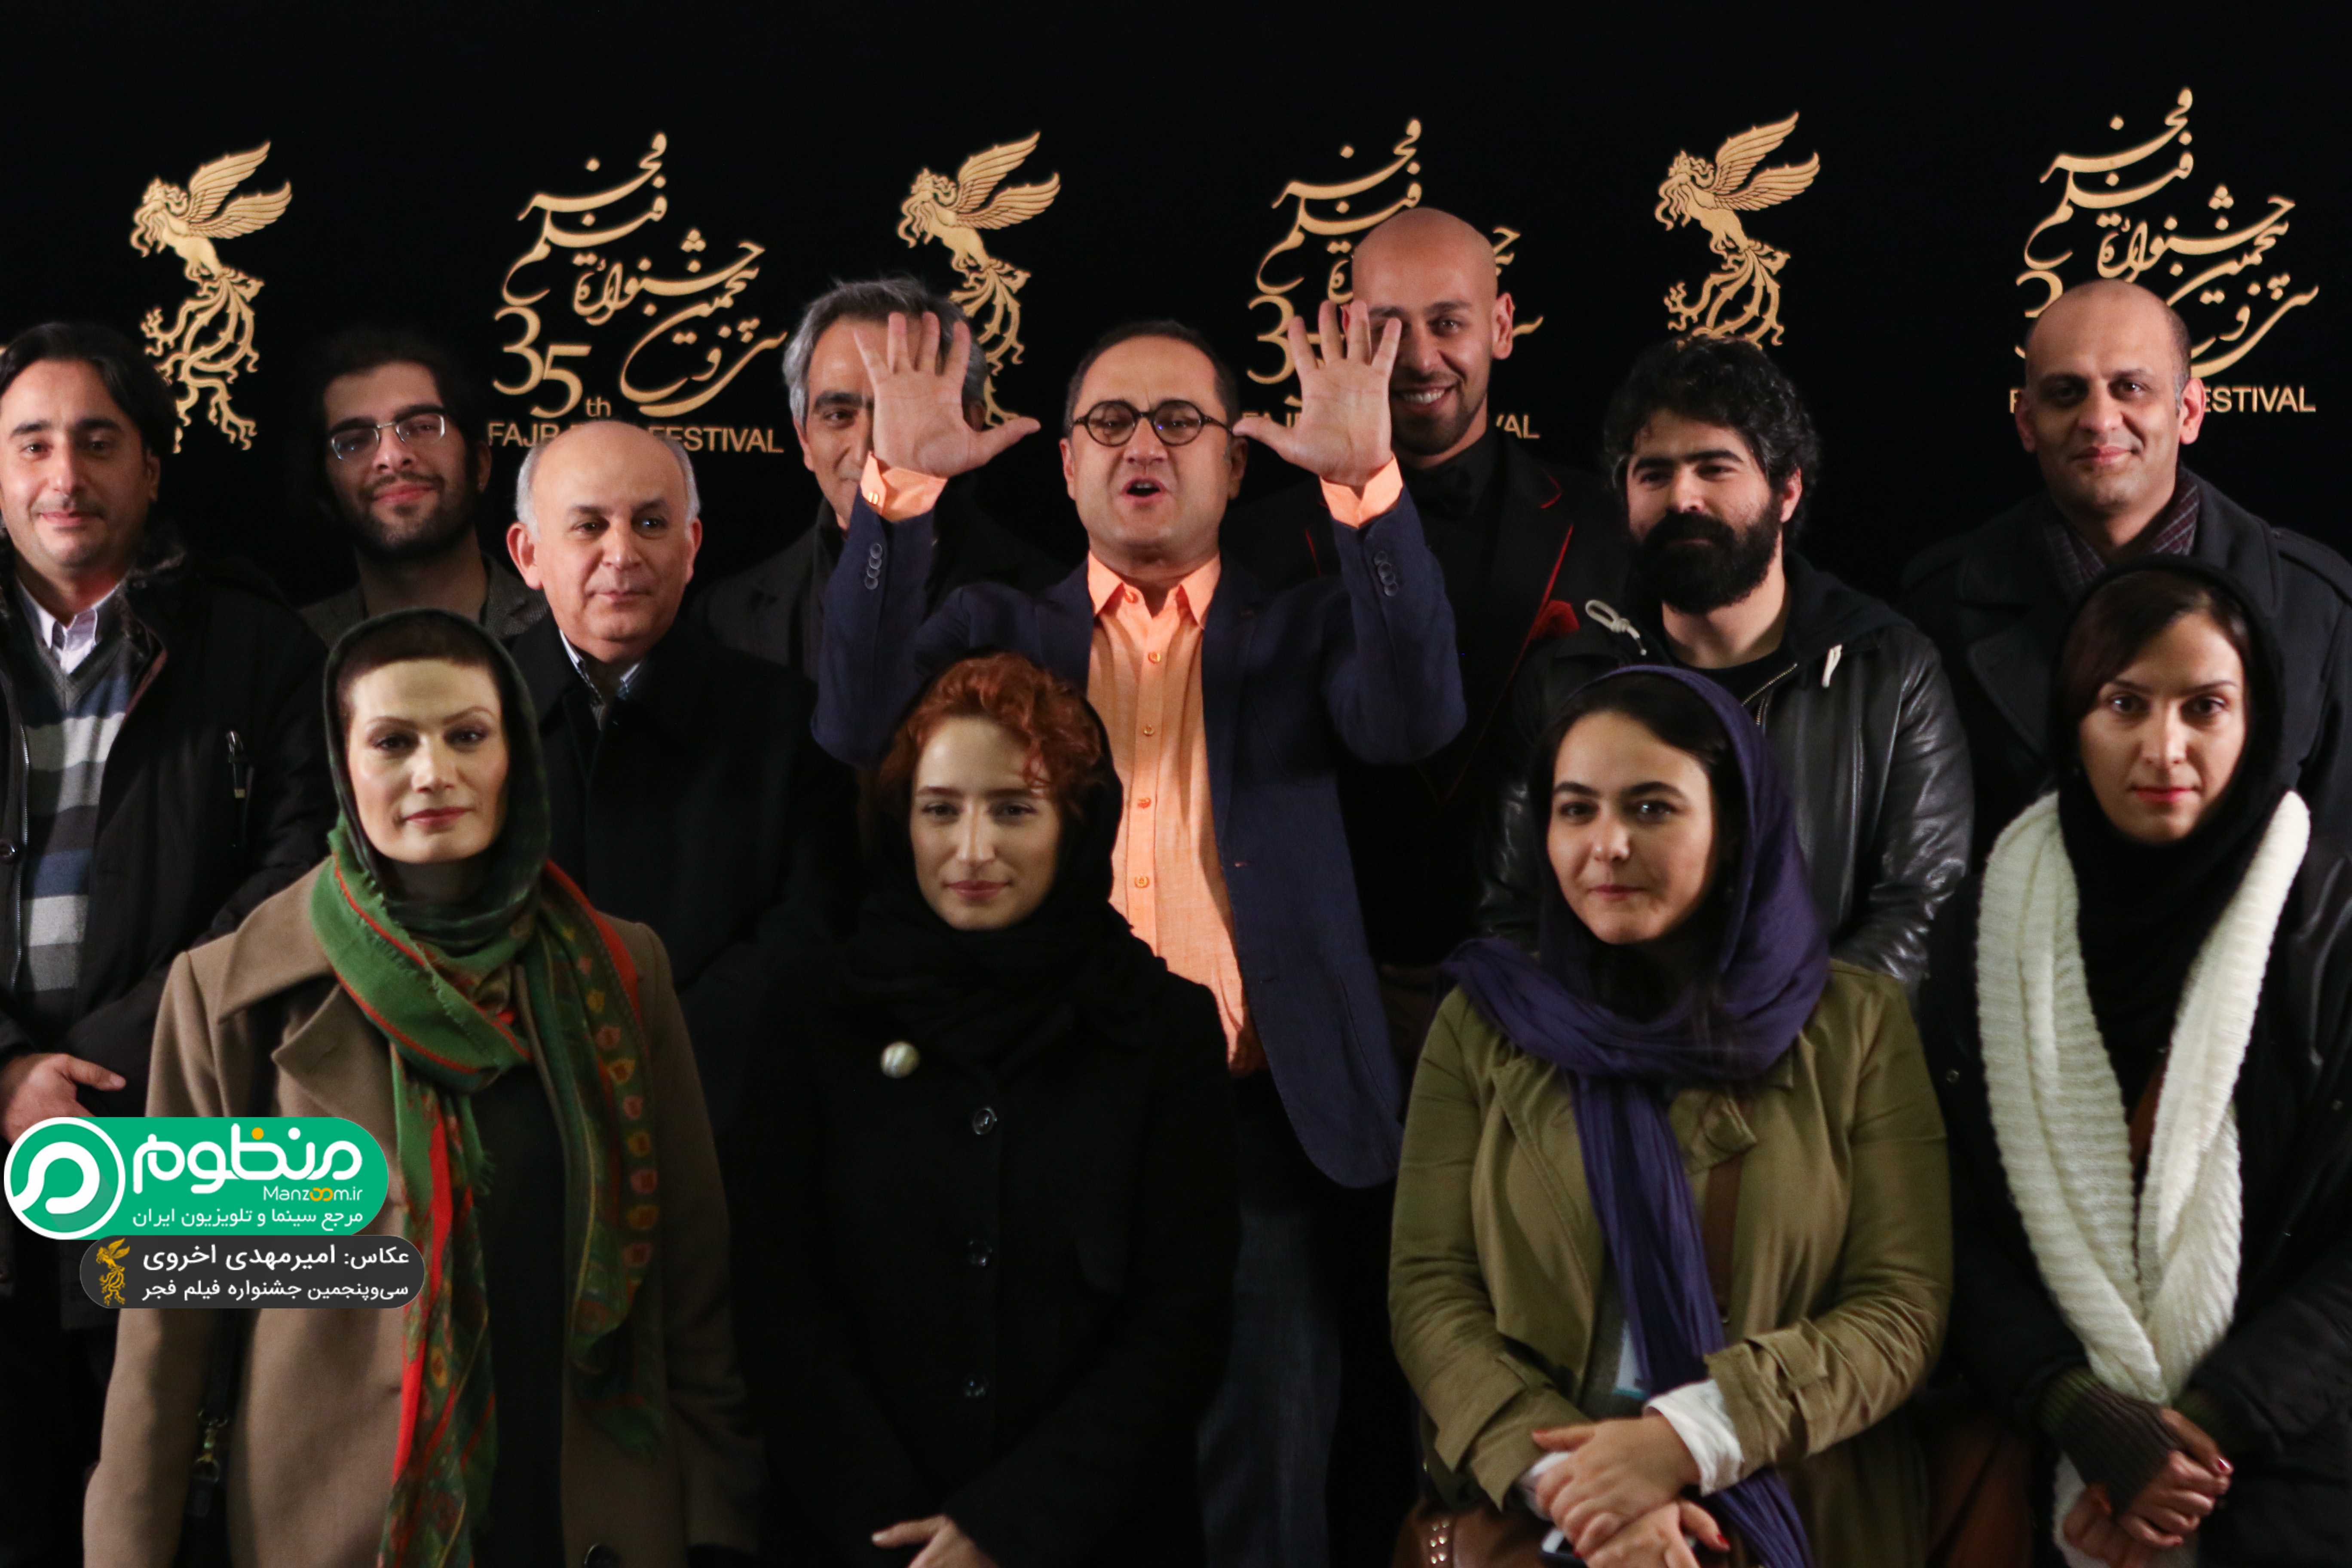 اکران افتتاحیه فیلم سینمایی نگار با حضور بهرام بدخشانی، رامبد جوان و نگار جواهریان